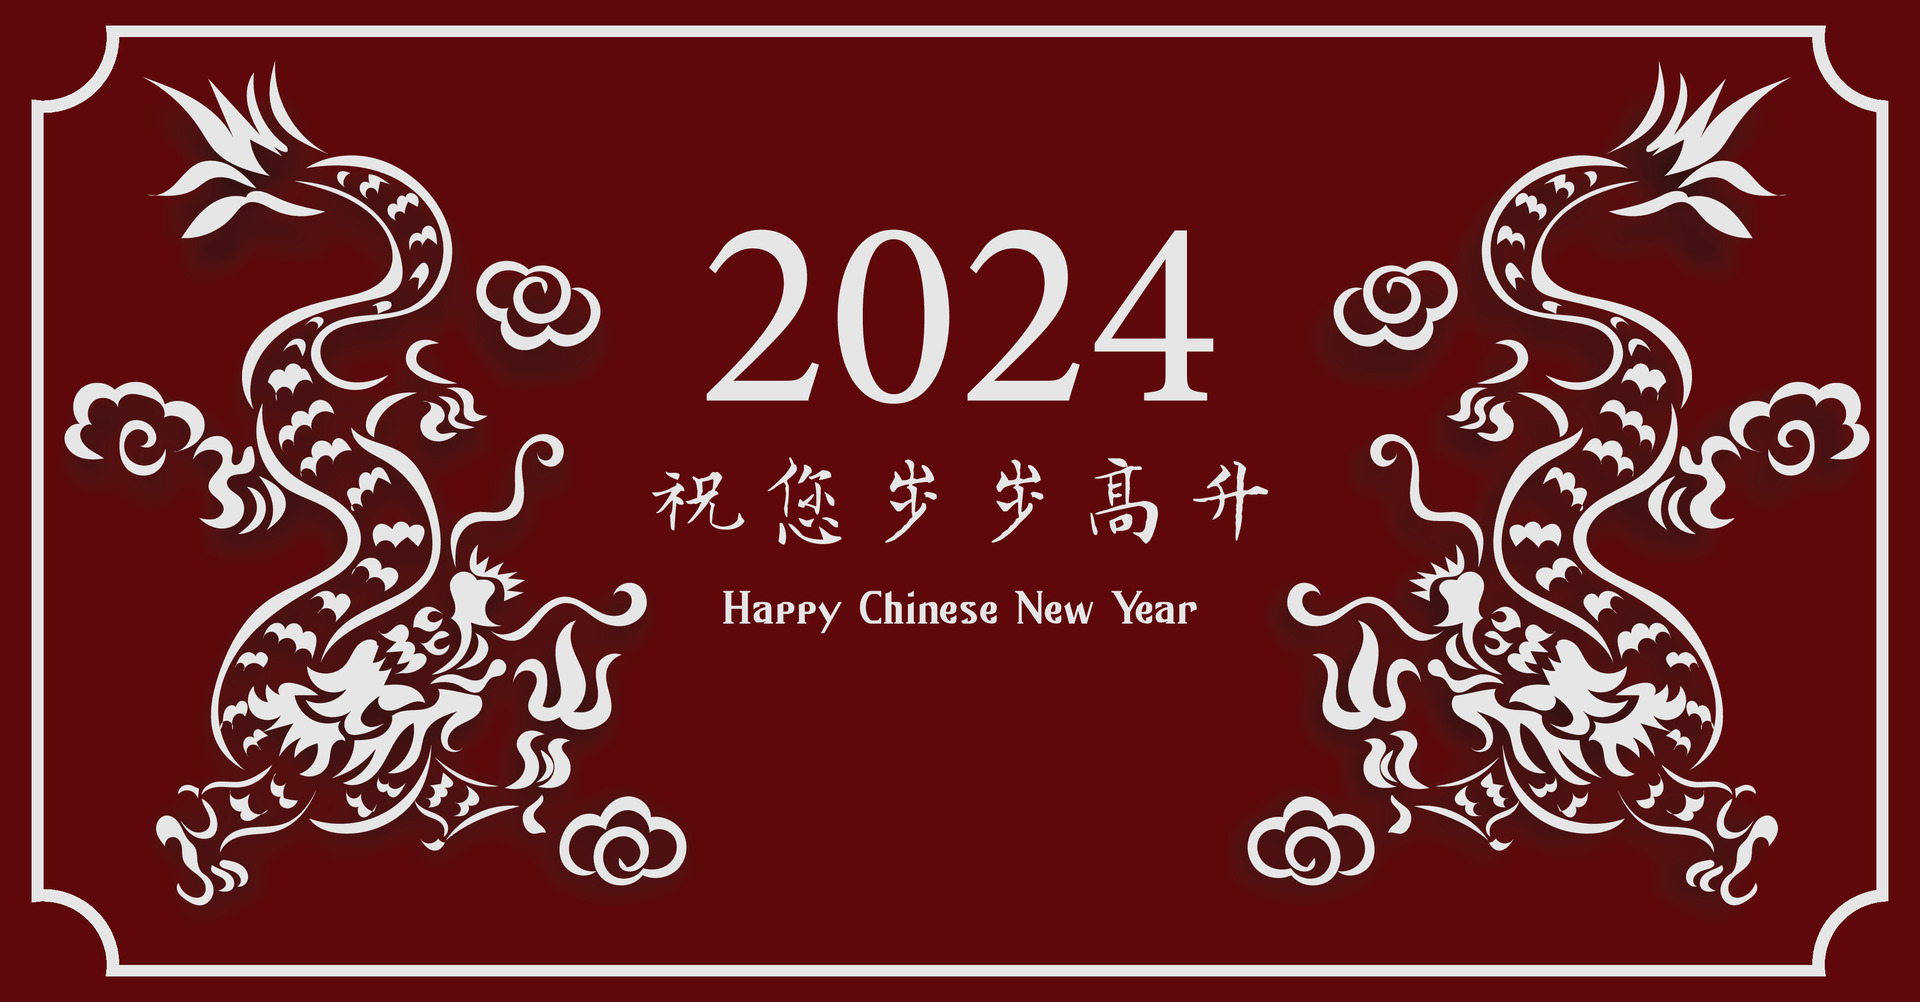 2024新年快樂圖 免費下載 | 天天瘋後製